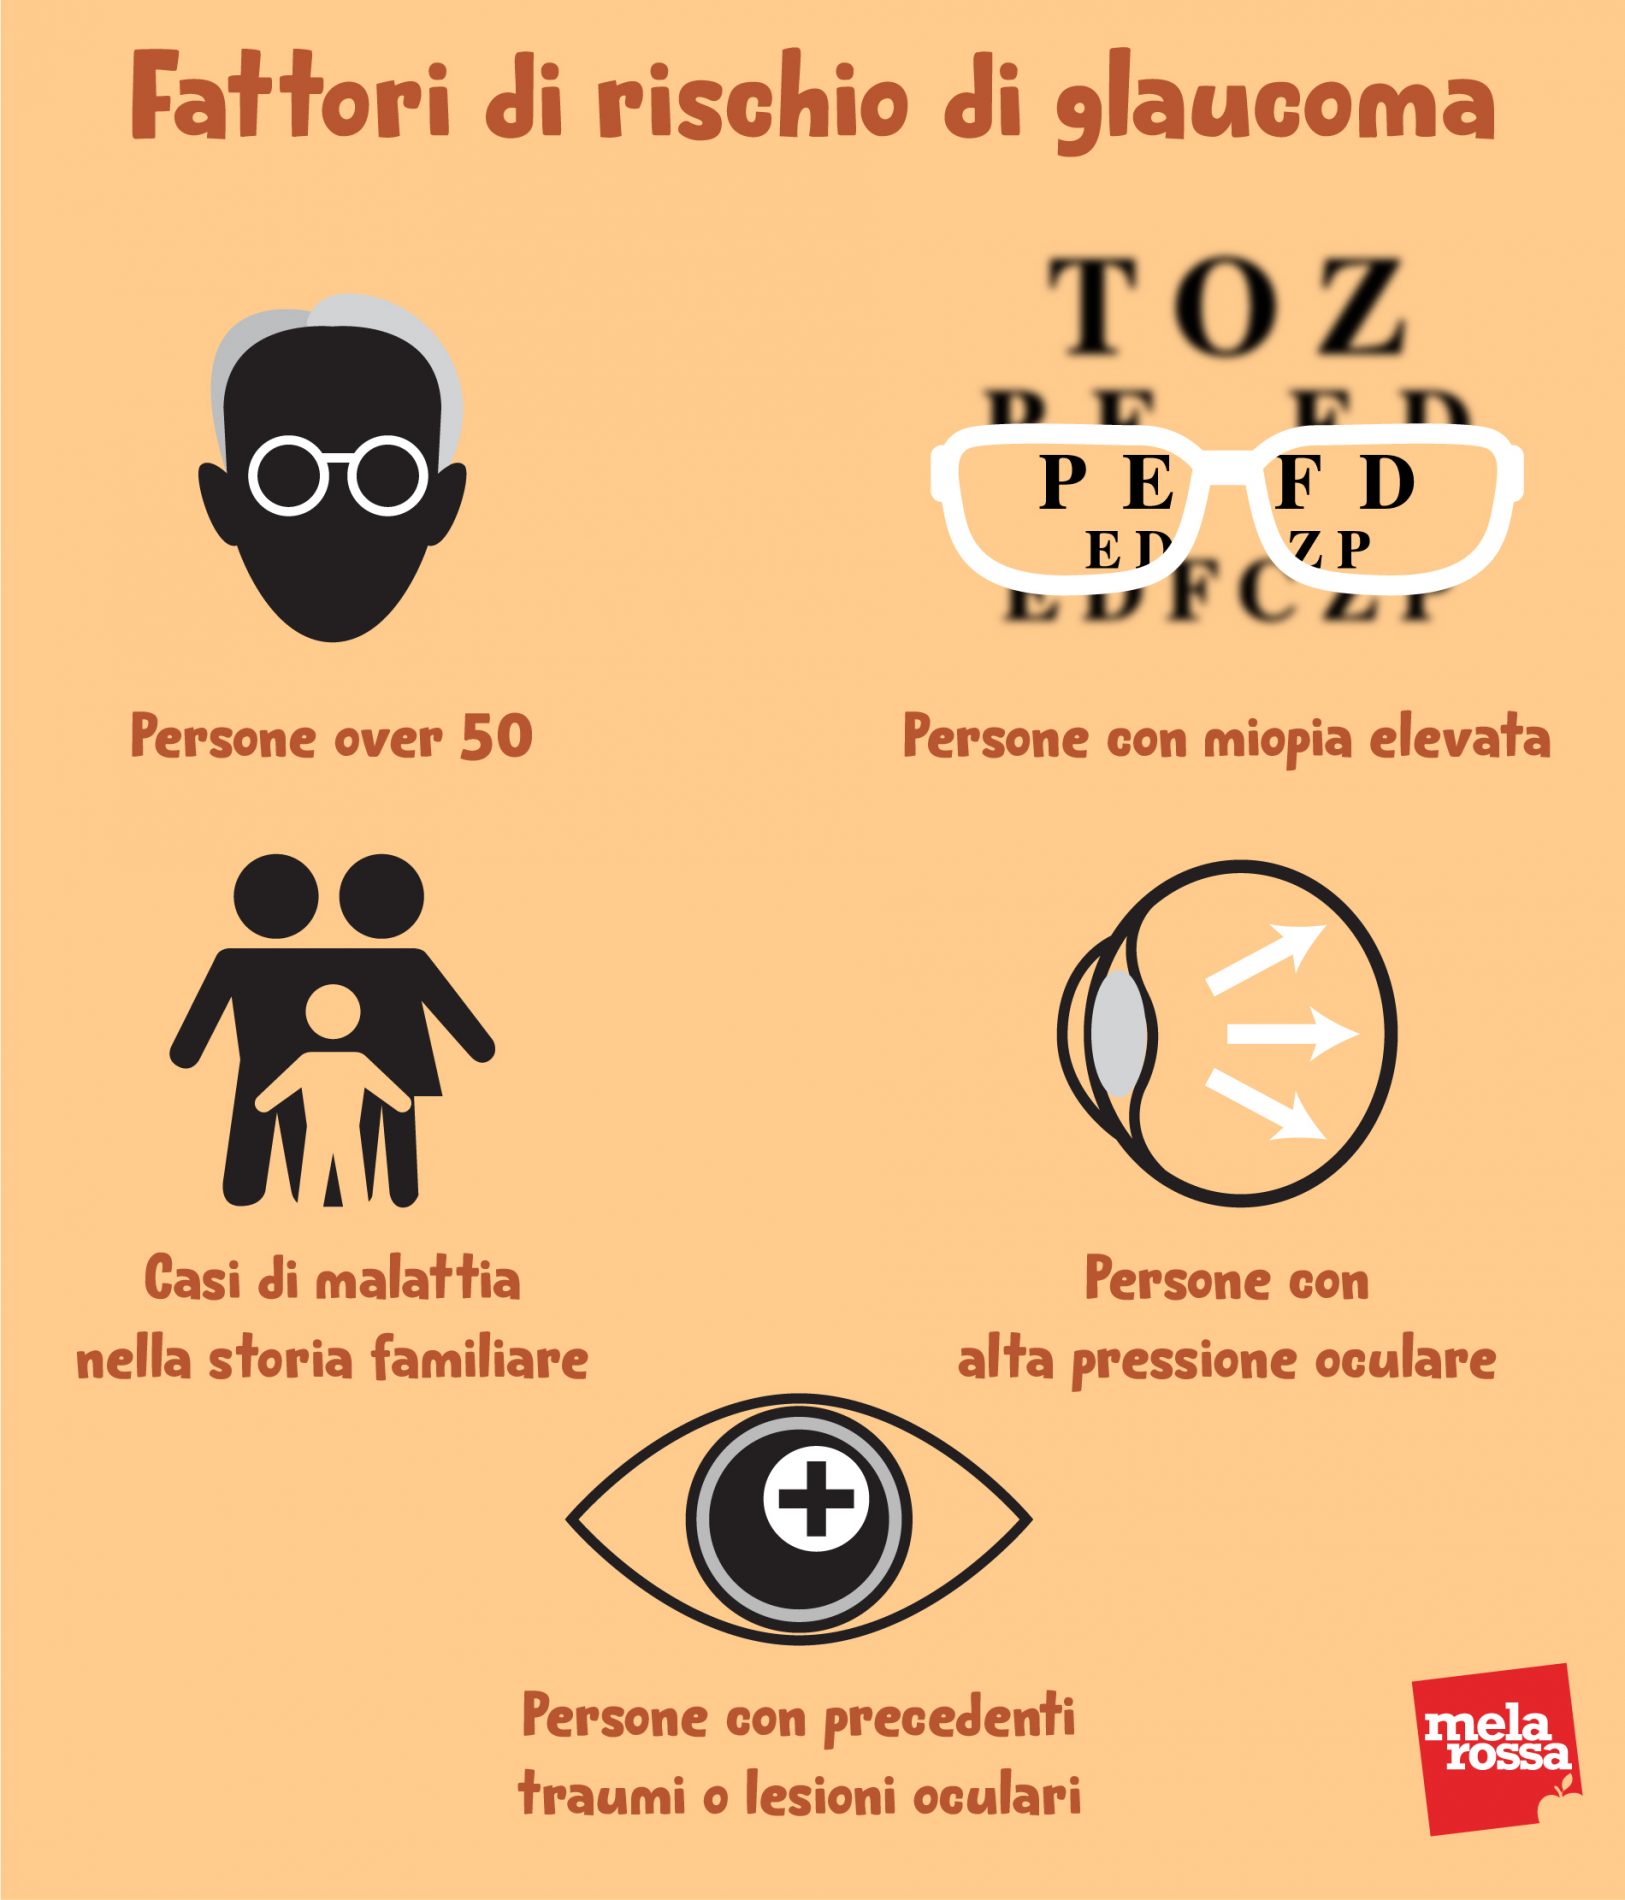 fattori di rischio del glaucoma 